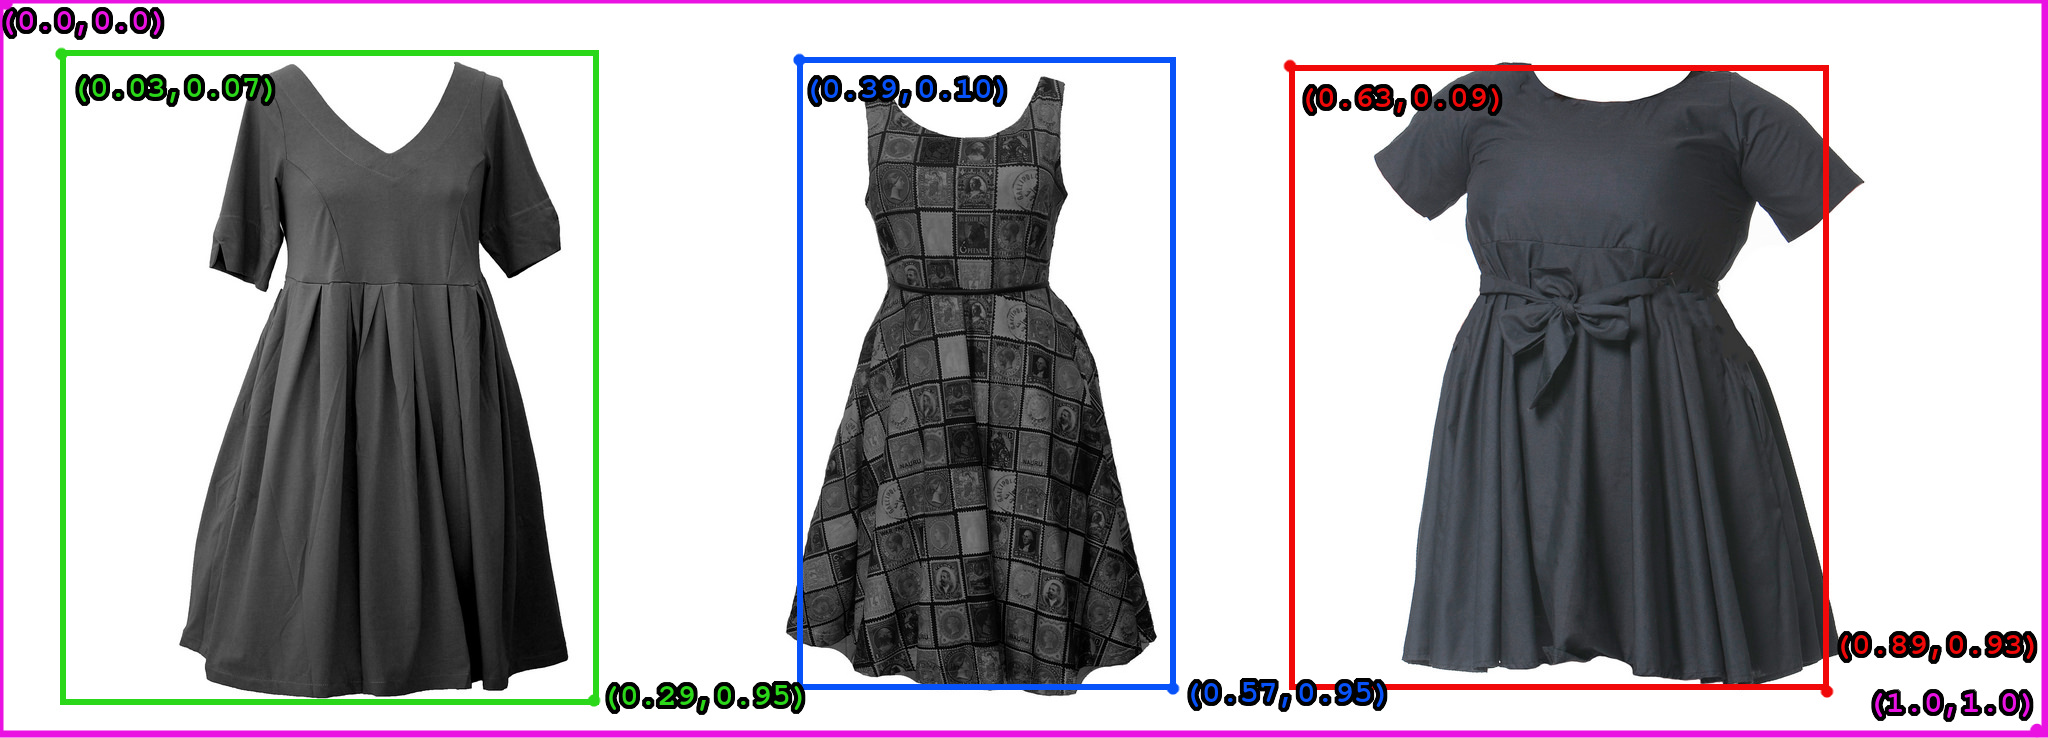 Cloud Storage 存储分区中包含 3 条连衣裙的图片